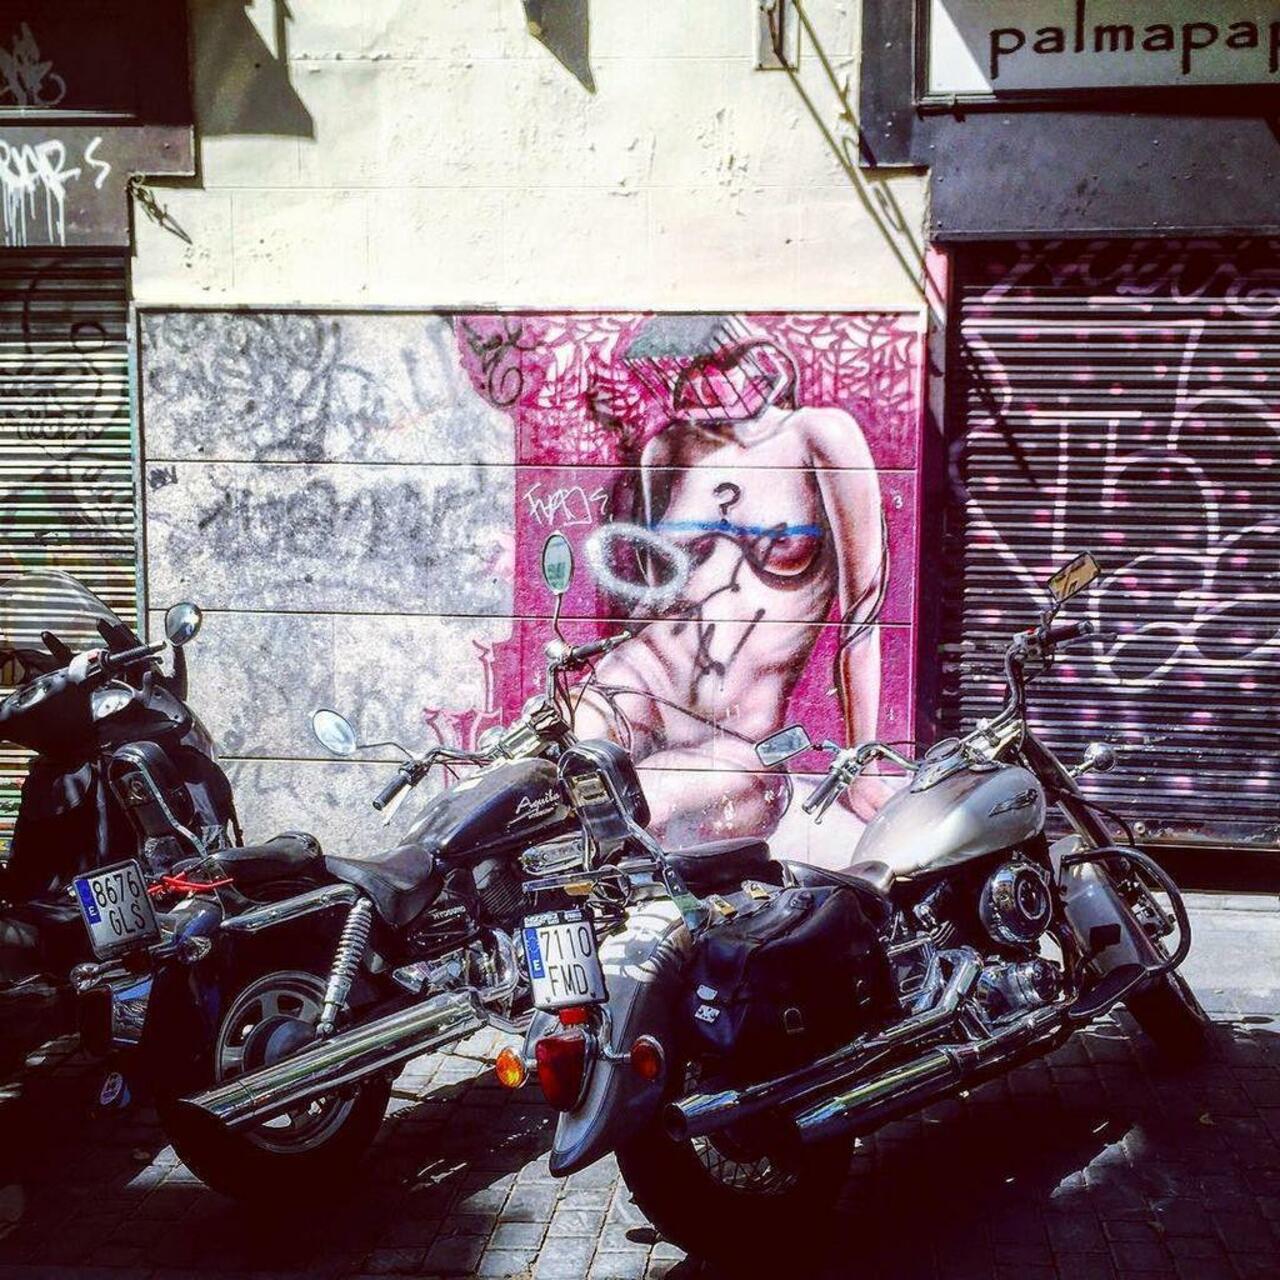 #motorcycle #igersmadrid #graffiti #graffitimadrid #instagraffiti #streetart #streetartmadrid #Spain #España #arteu… http://t.co/x8xUa4jJXm